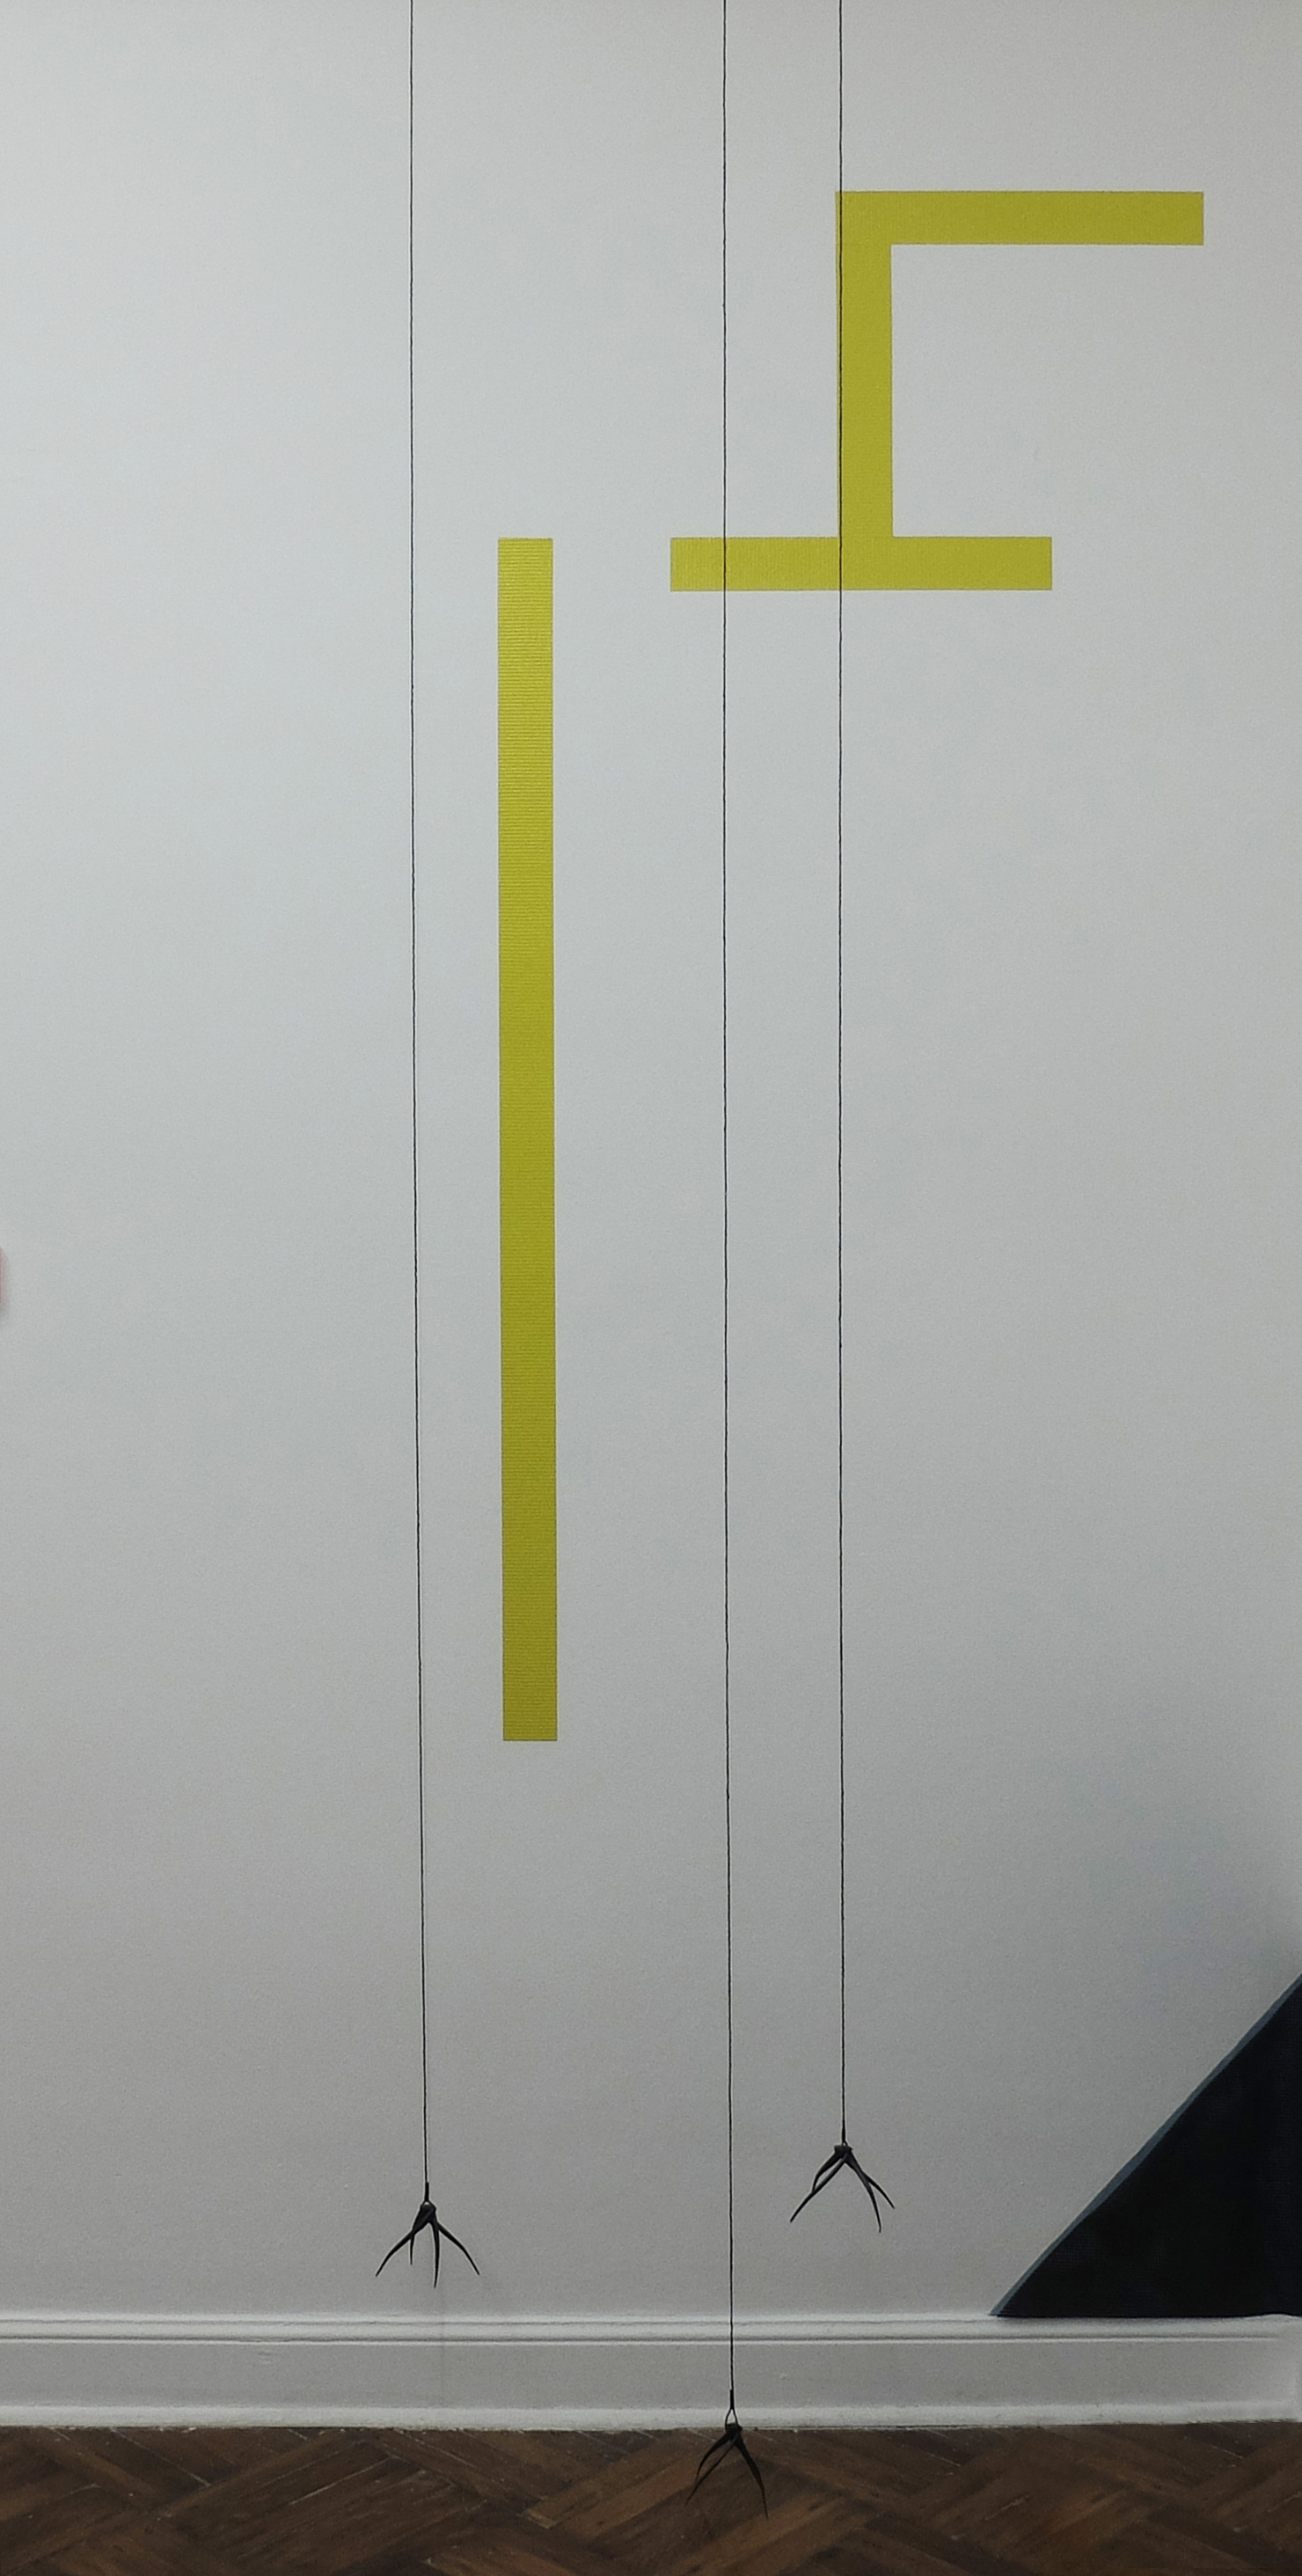 Cartel perfecto -Cinta silver tape amarilla, hilo y hierro - 120x200x30cm - 2021 - Mariela Vita copia